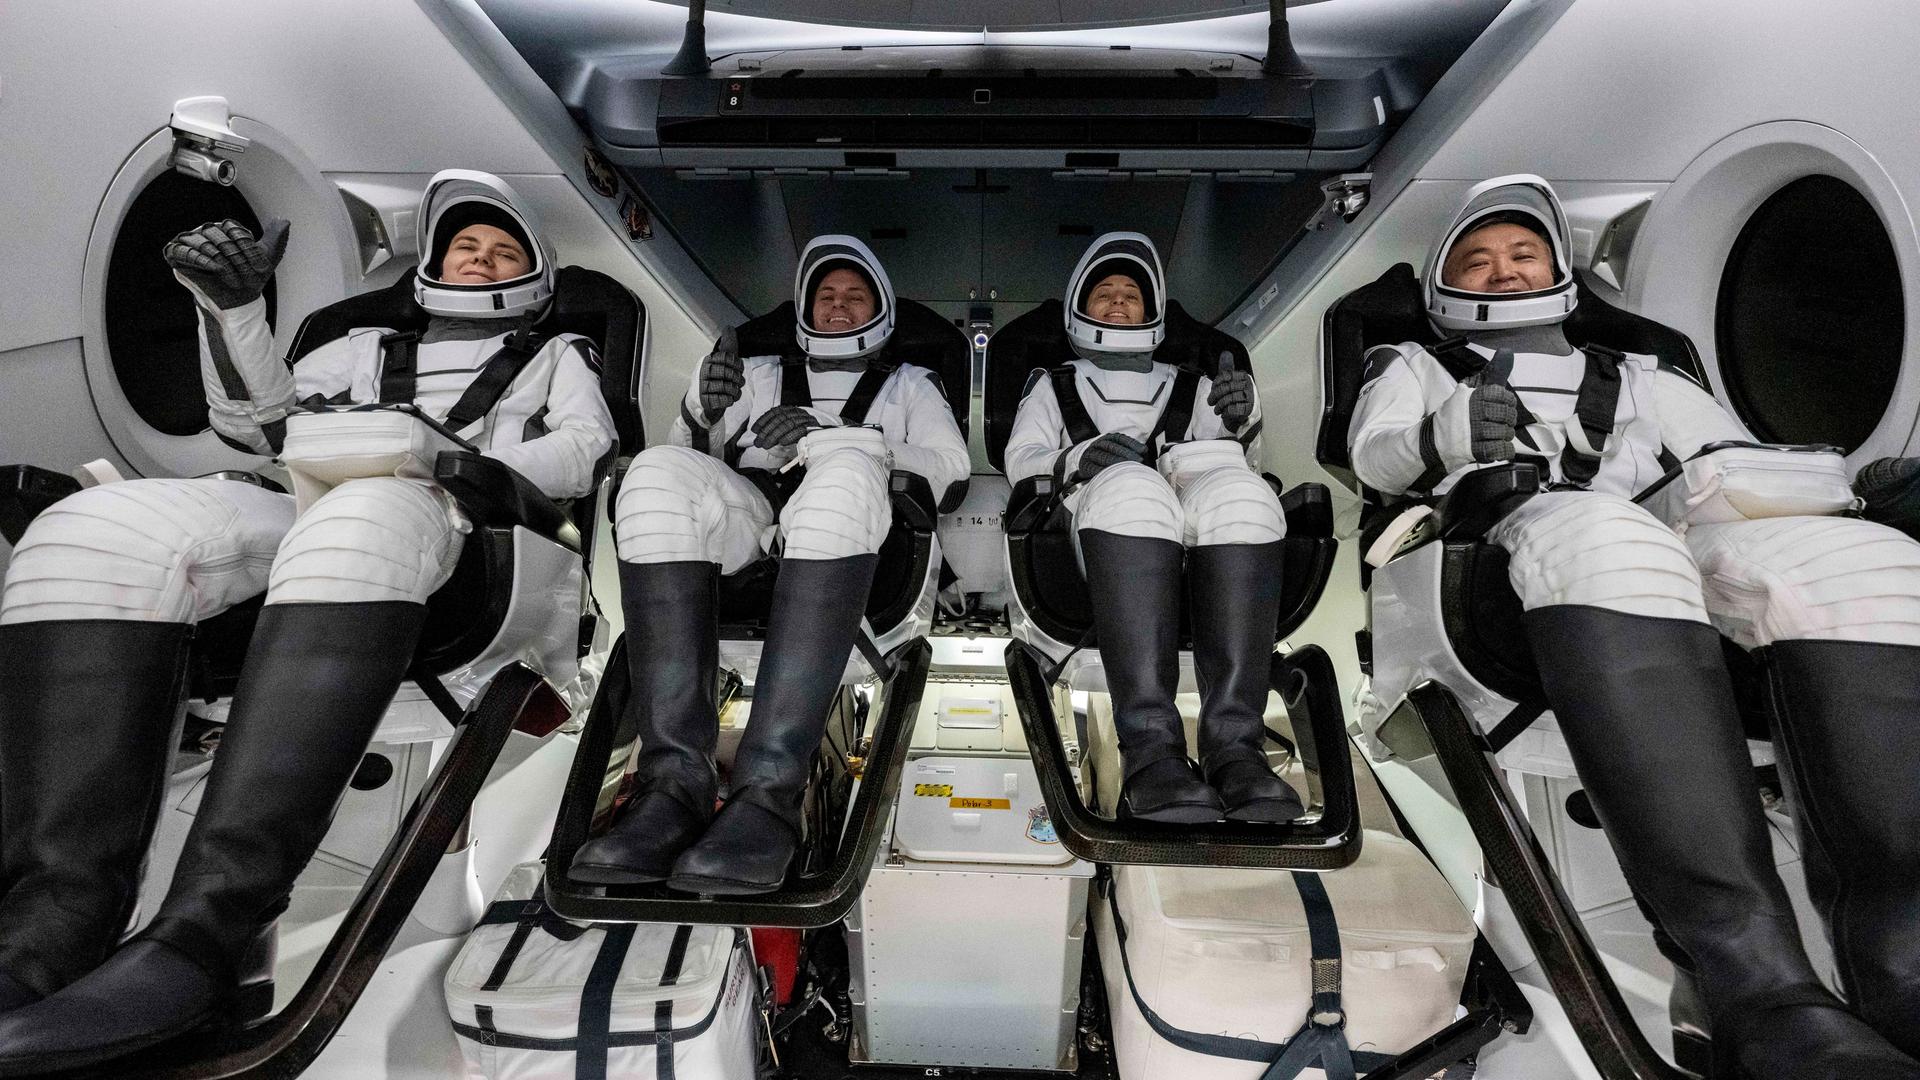 Das Foto zeigt von links nach rechts die russische Kosmonautin Anna Kikina, die NASA-Astronauten Josh Cassada und Nicole Mann, und den japanischen Astronauten Koichi Wakata an Bord eines "Crew Dragon" von SpaceX.